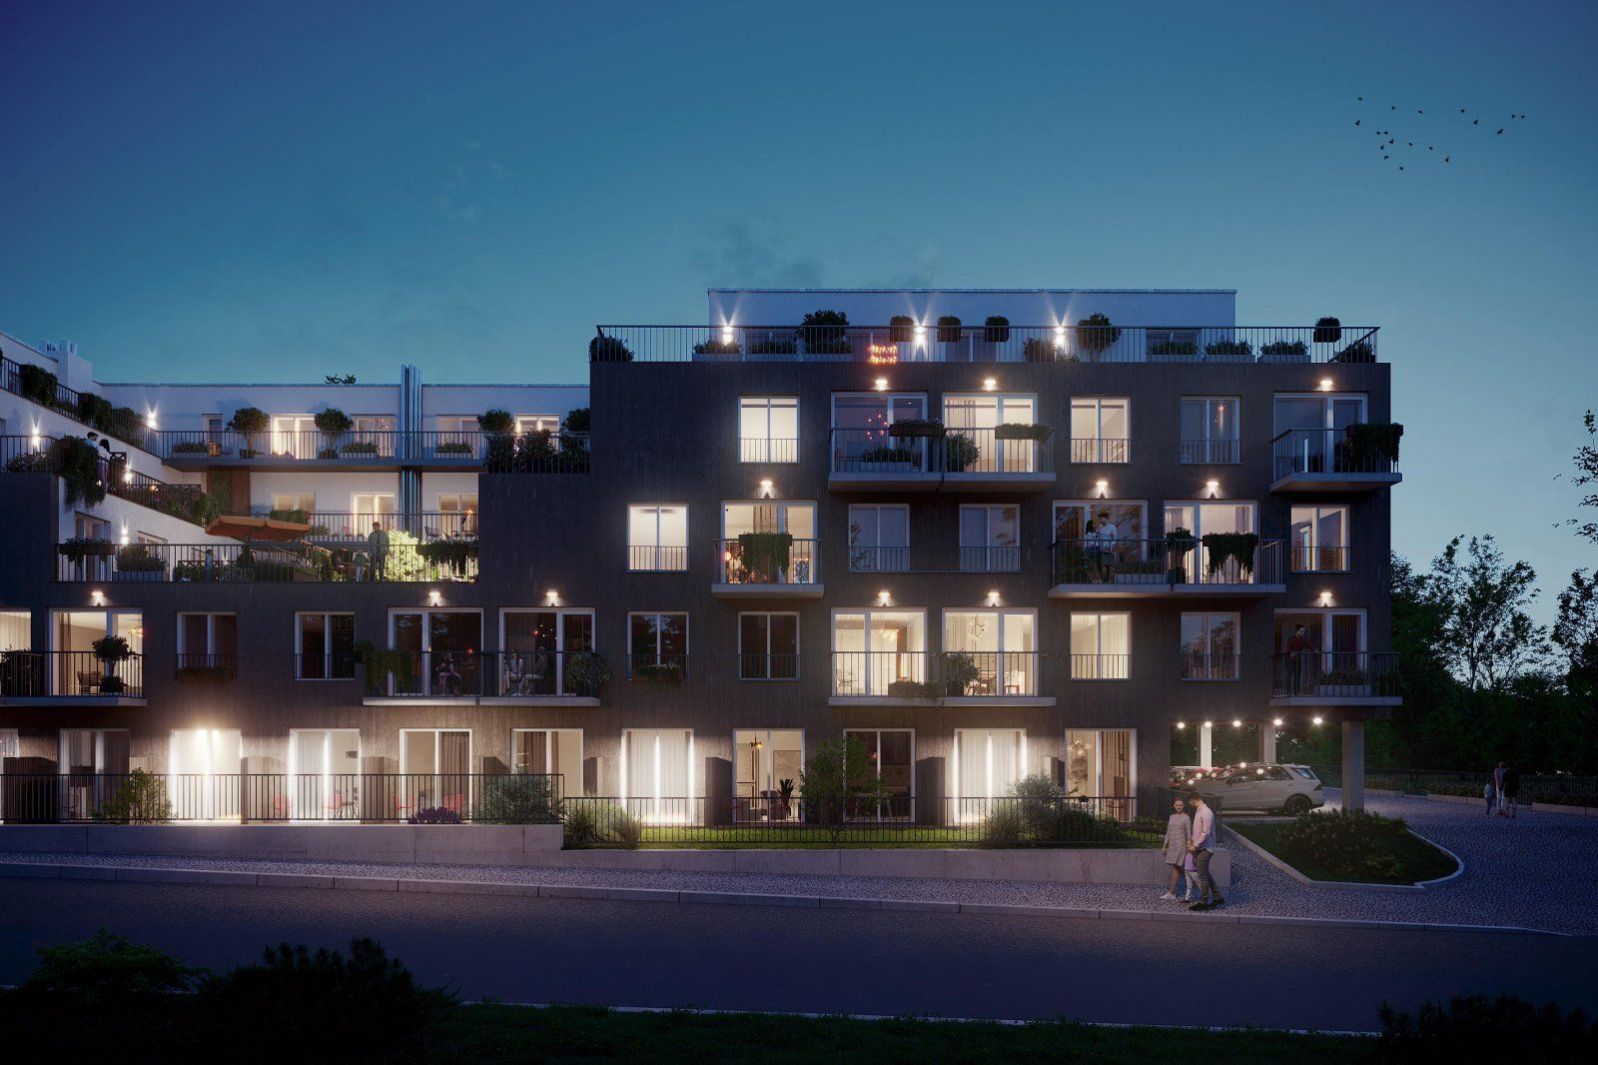 Moderní rodinný byt 3+kk s balkonem na Praze 9 v projektu Zelené kaskády. Akční sleva 339 920 Kč., obrázek č. 1